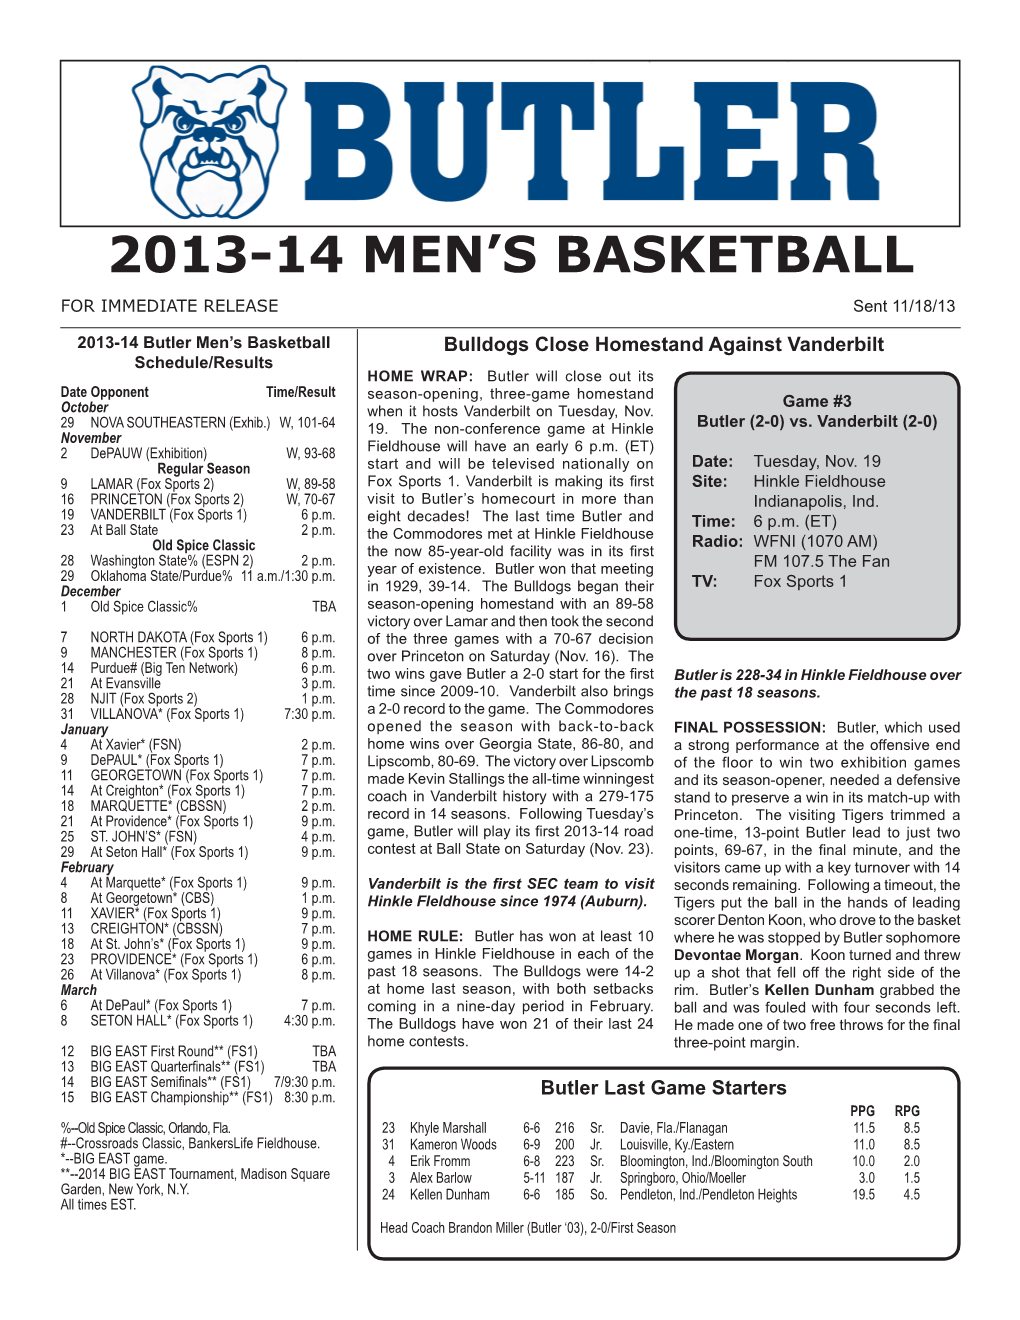 2013-14 Men's Basketball